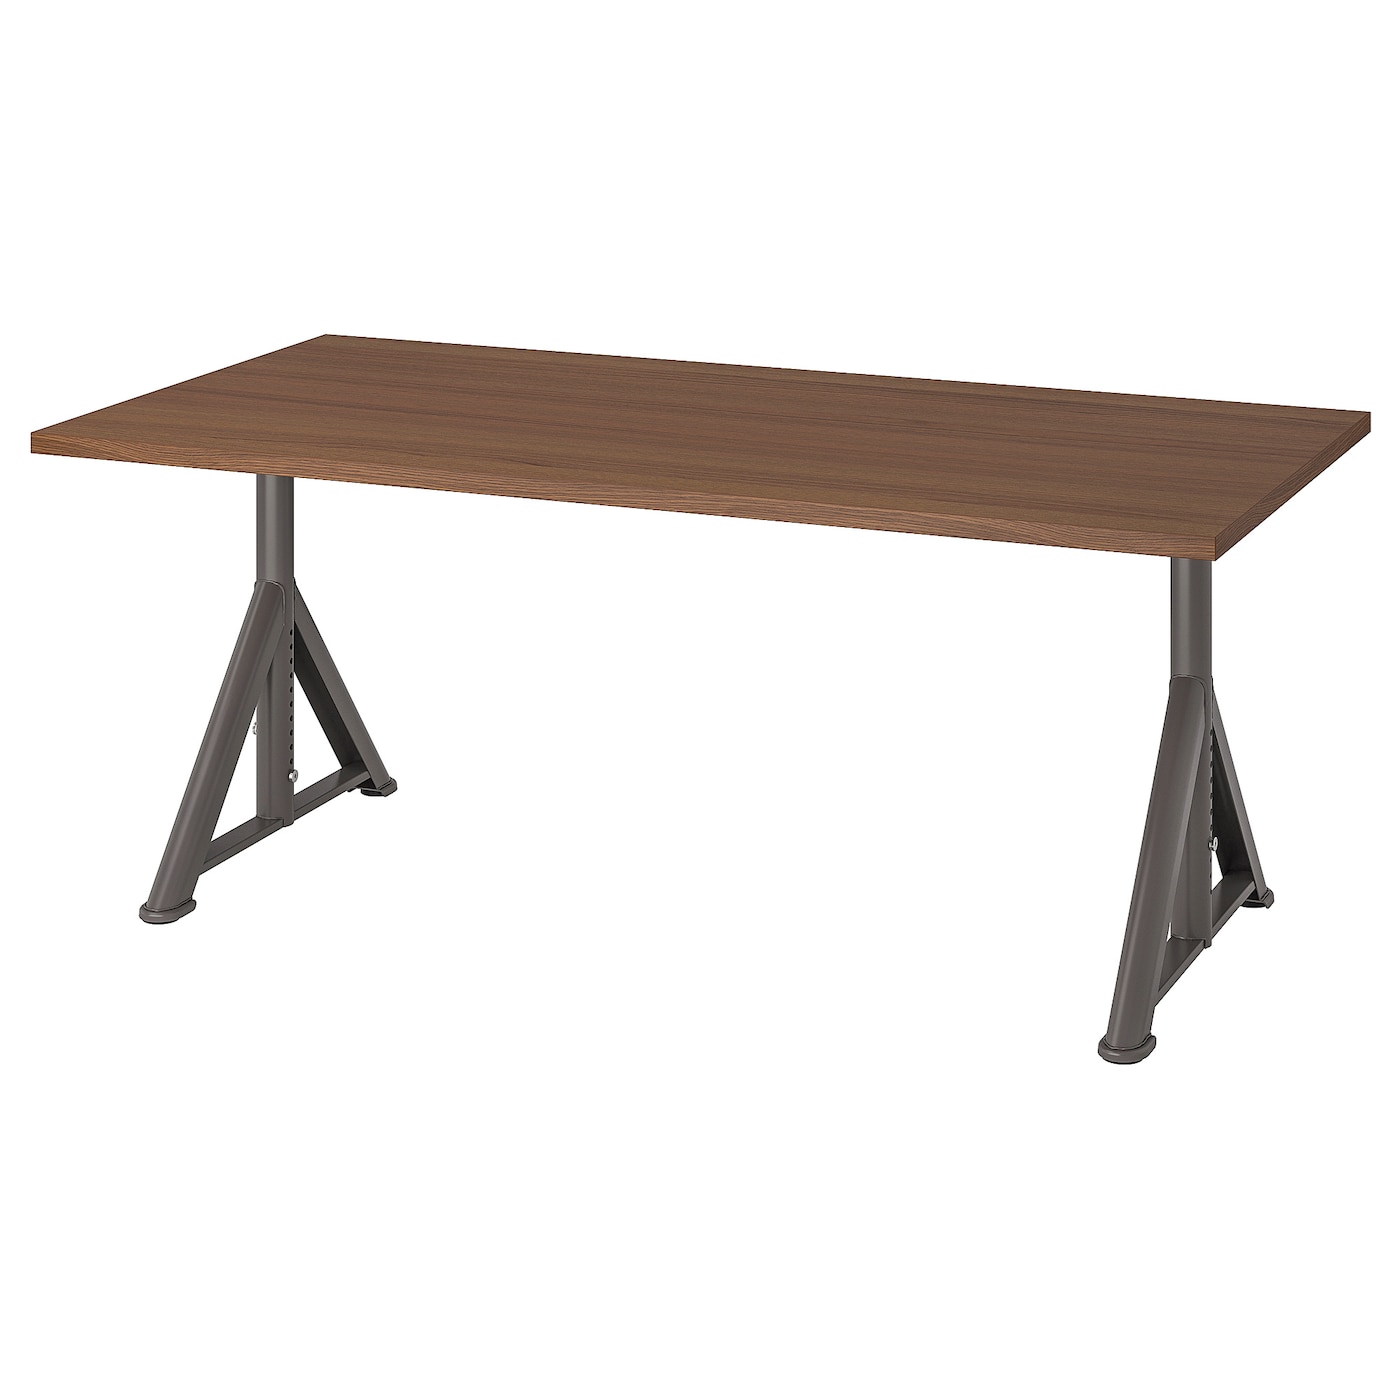 Письменный стол - IDÅSEN /IDАSEN IKEA/ ИДОСЕН ИКЕА,  160х80 см, коричневый